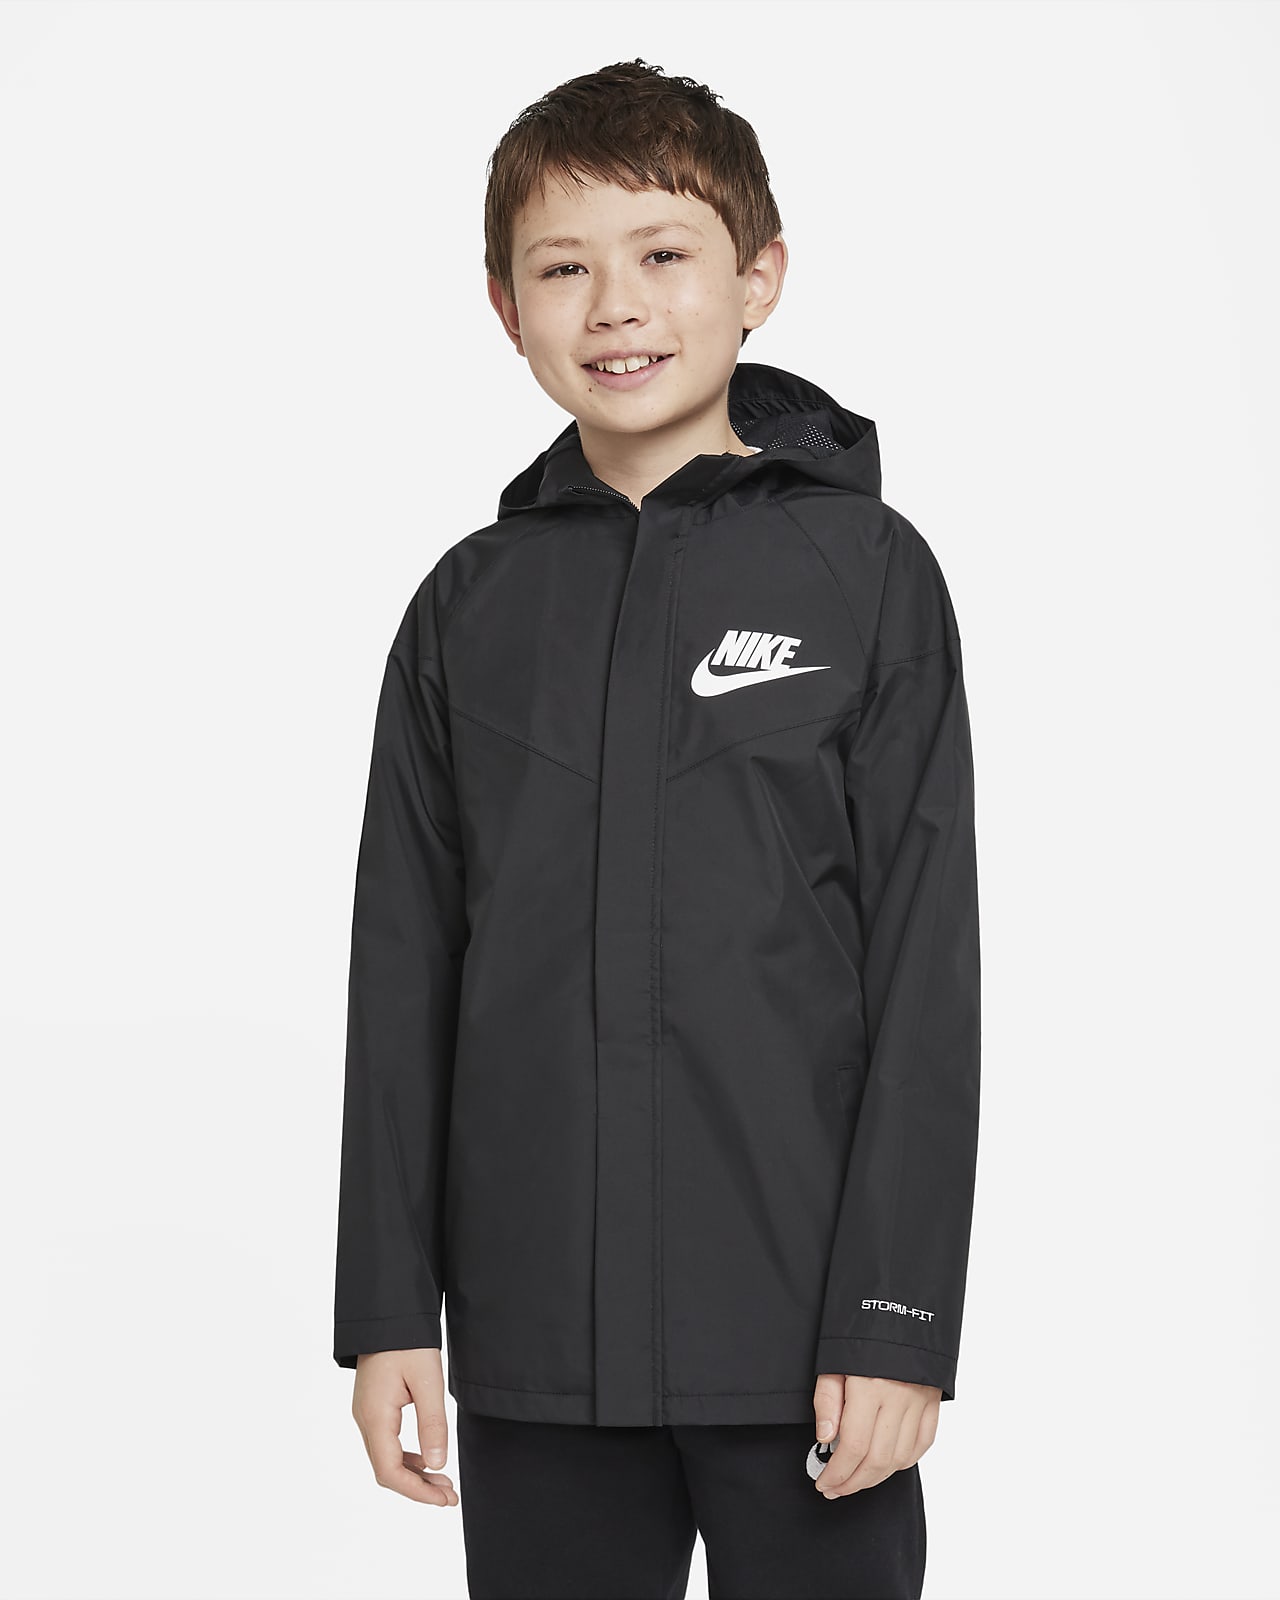 Nike Sportswear Windpuffer ruimvallend waterbestendig jongensjack op heuplengte met Storm-FIT en capuchon